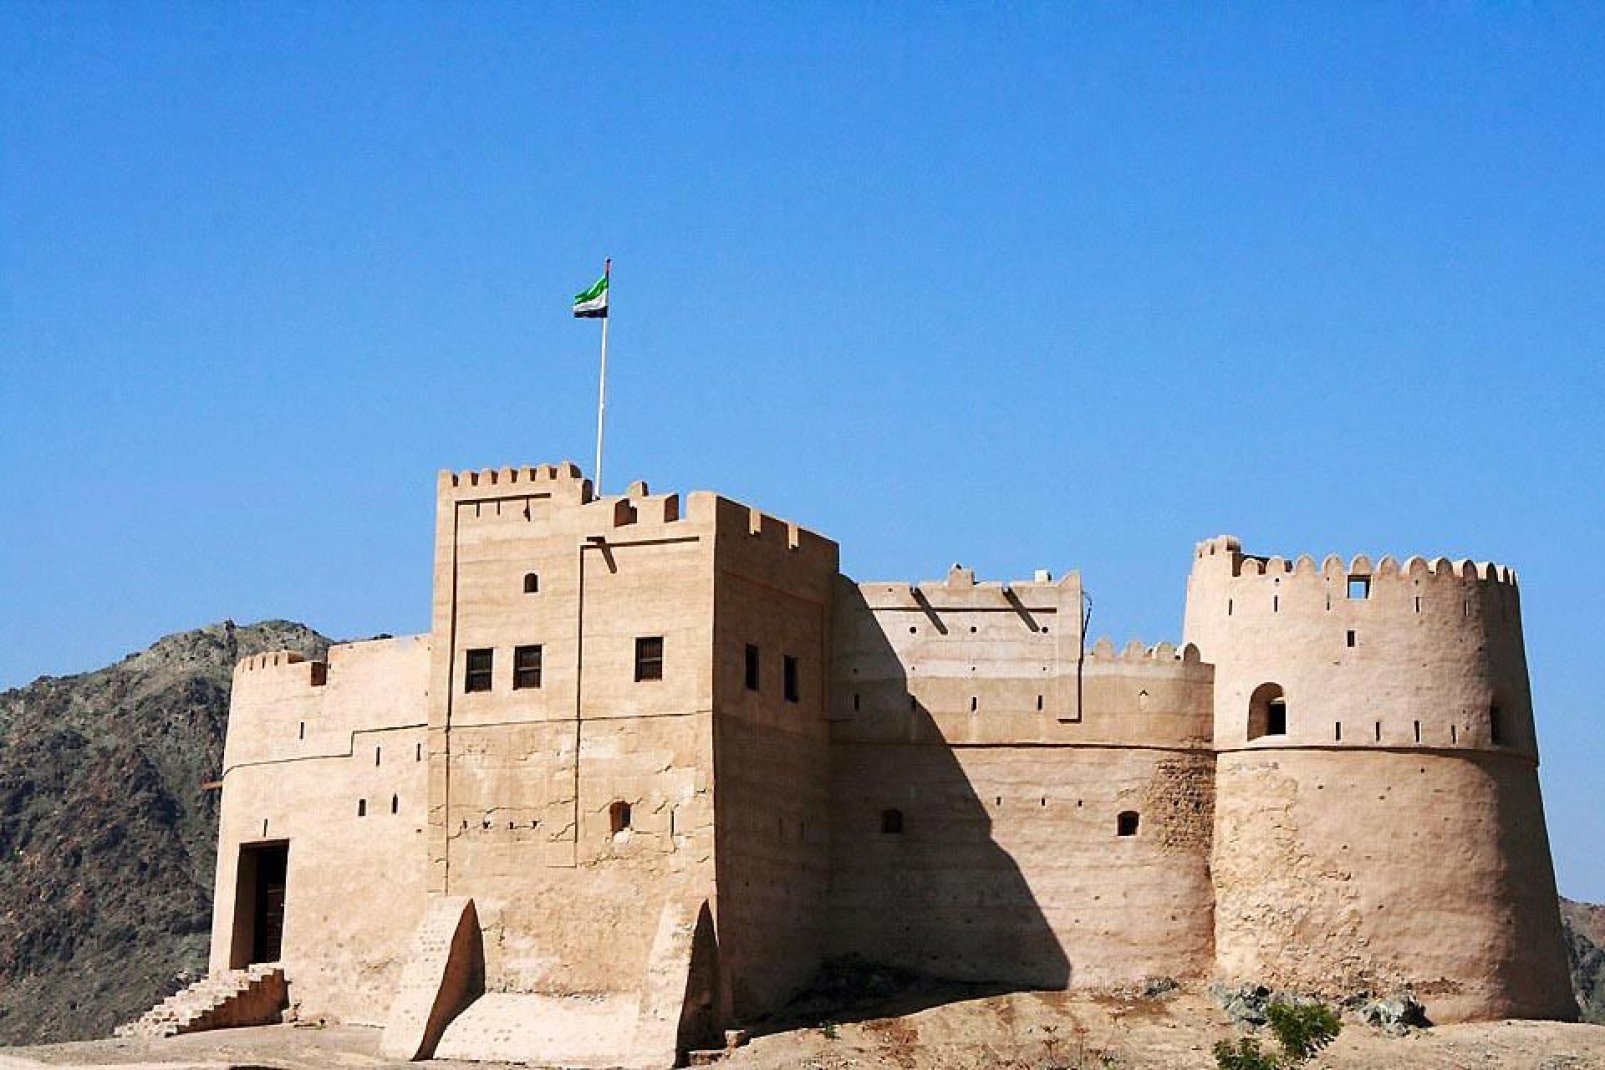 Tra gli emirati arabi uniti, Fujairah è lo stato più "giovane". Il Forte è la principale attrazione turistica della città.